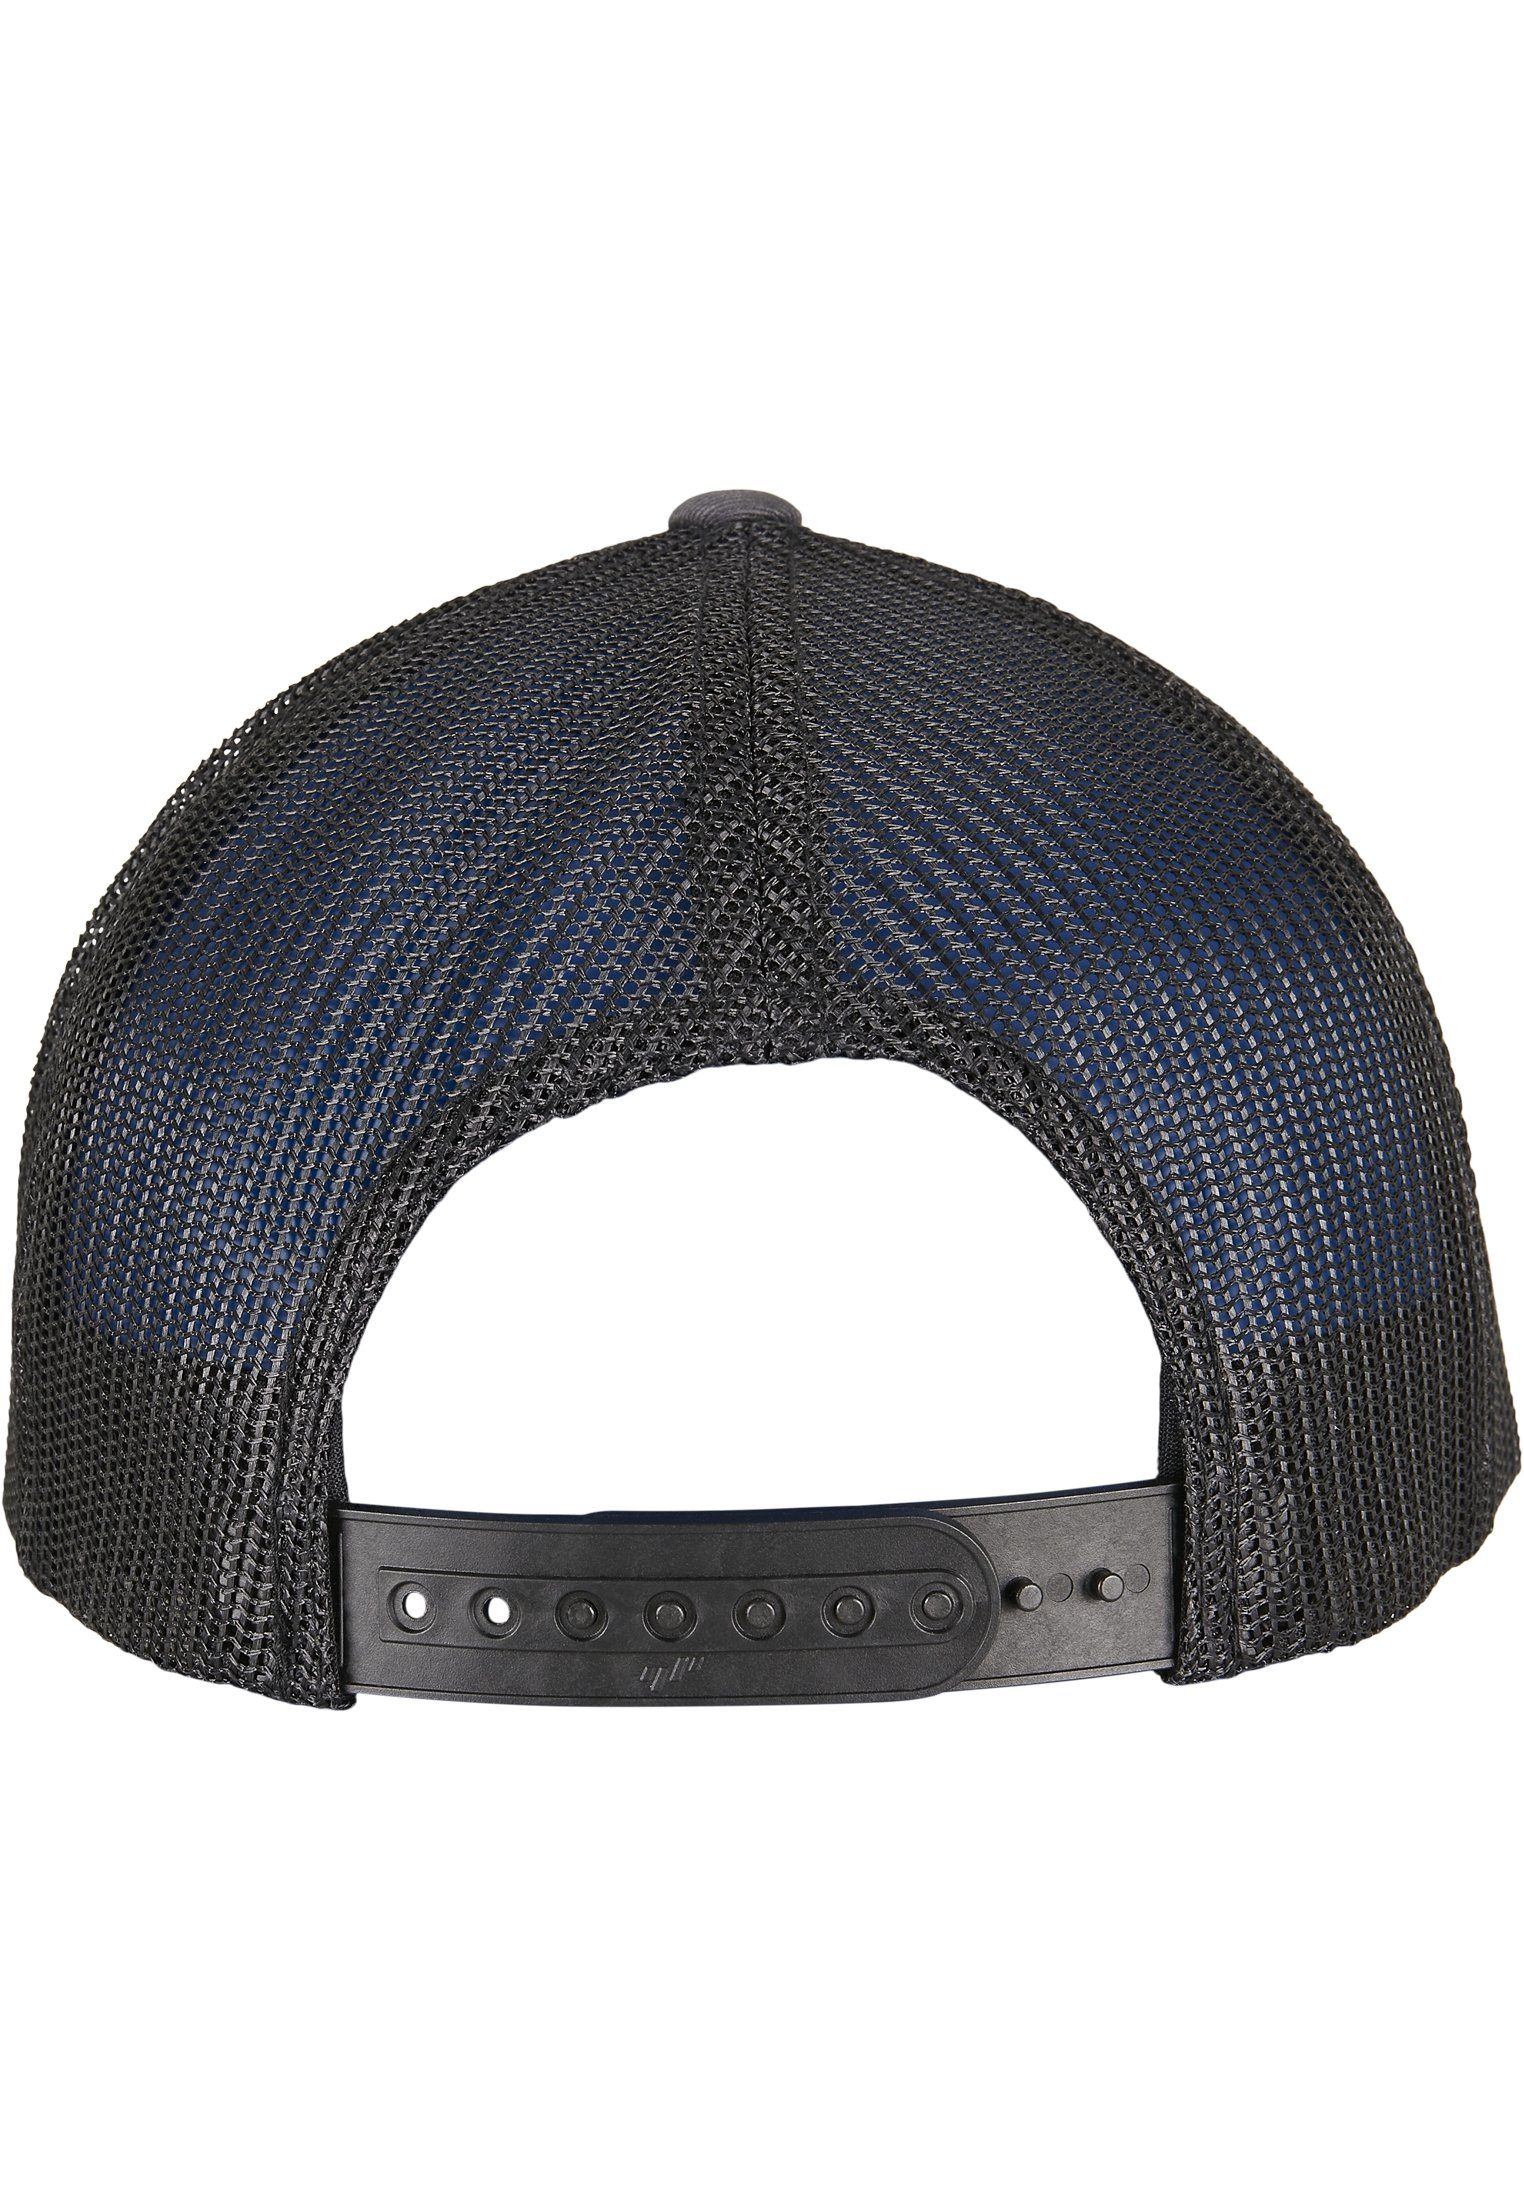 Flexfit Caps RECYCLED 2-TONE YP RETRO Flex Cap charcoal/black TRUCKER CAP CLASSICS